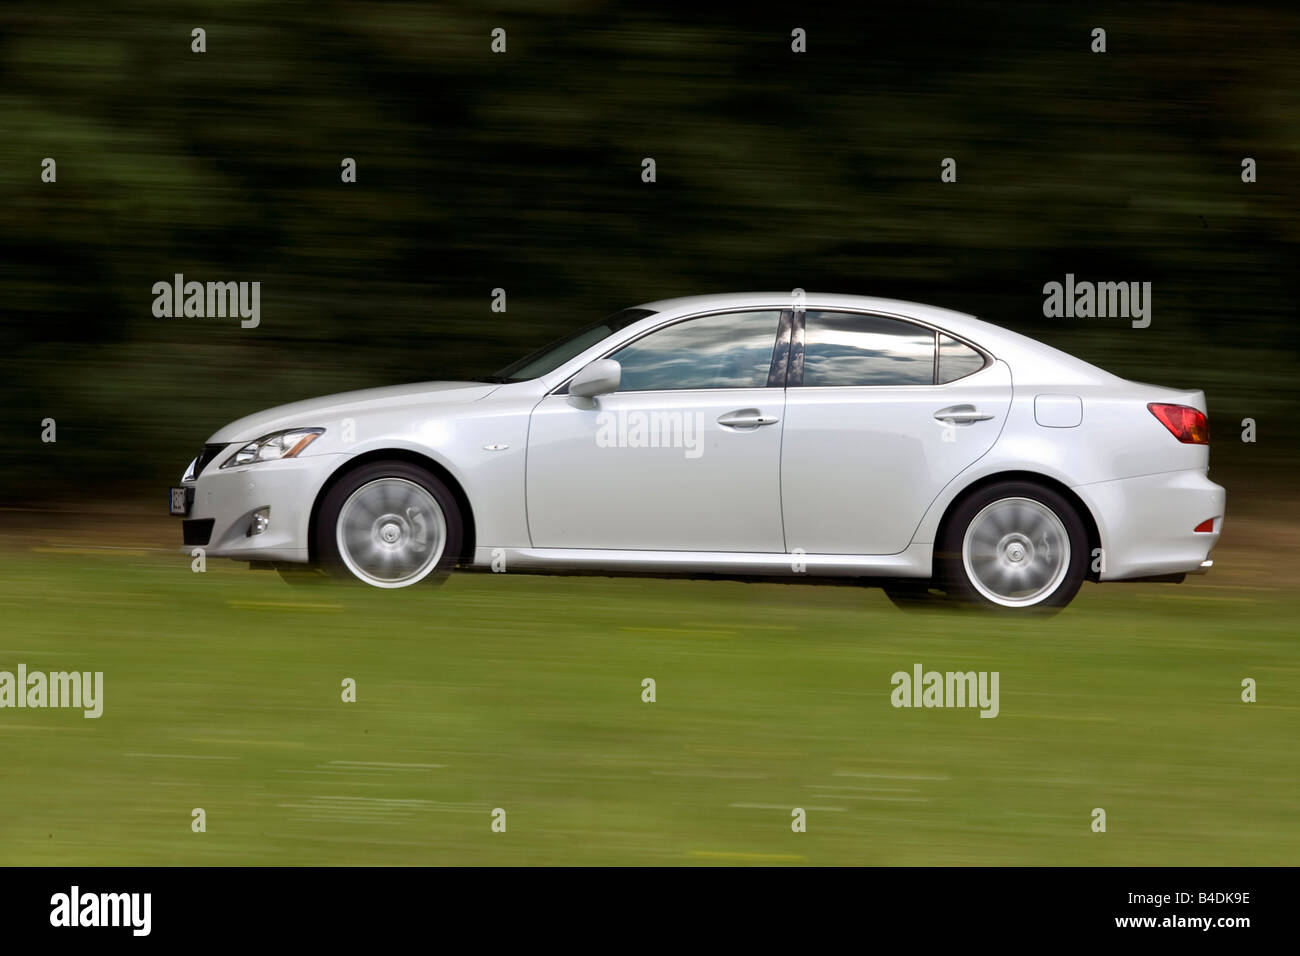 Lexus est 250, l'année de modèle 2005-, blanc, la conduite, la vue latérale, country road Banque D'Images